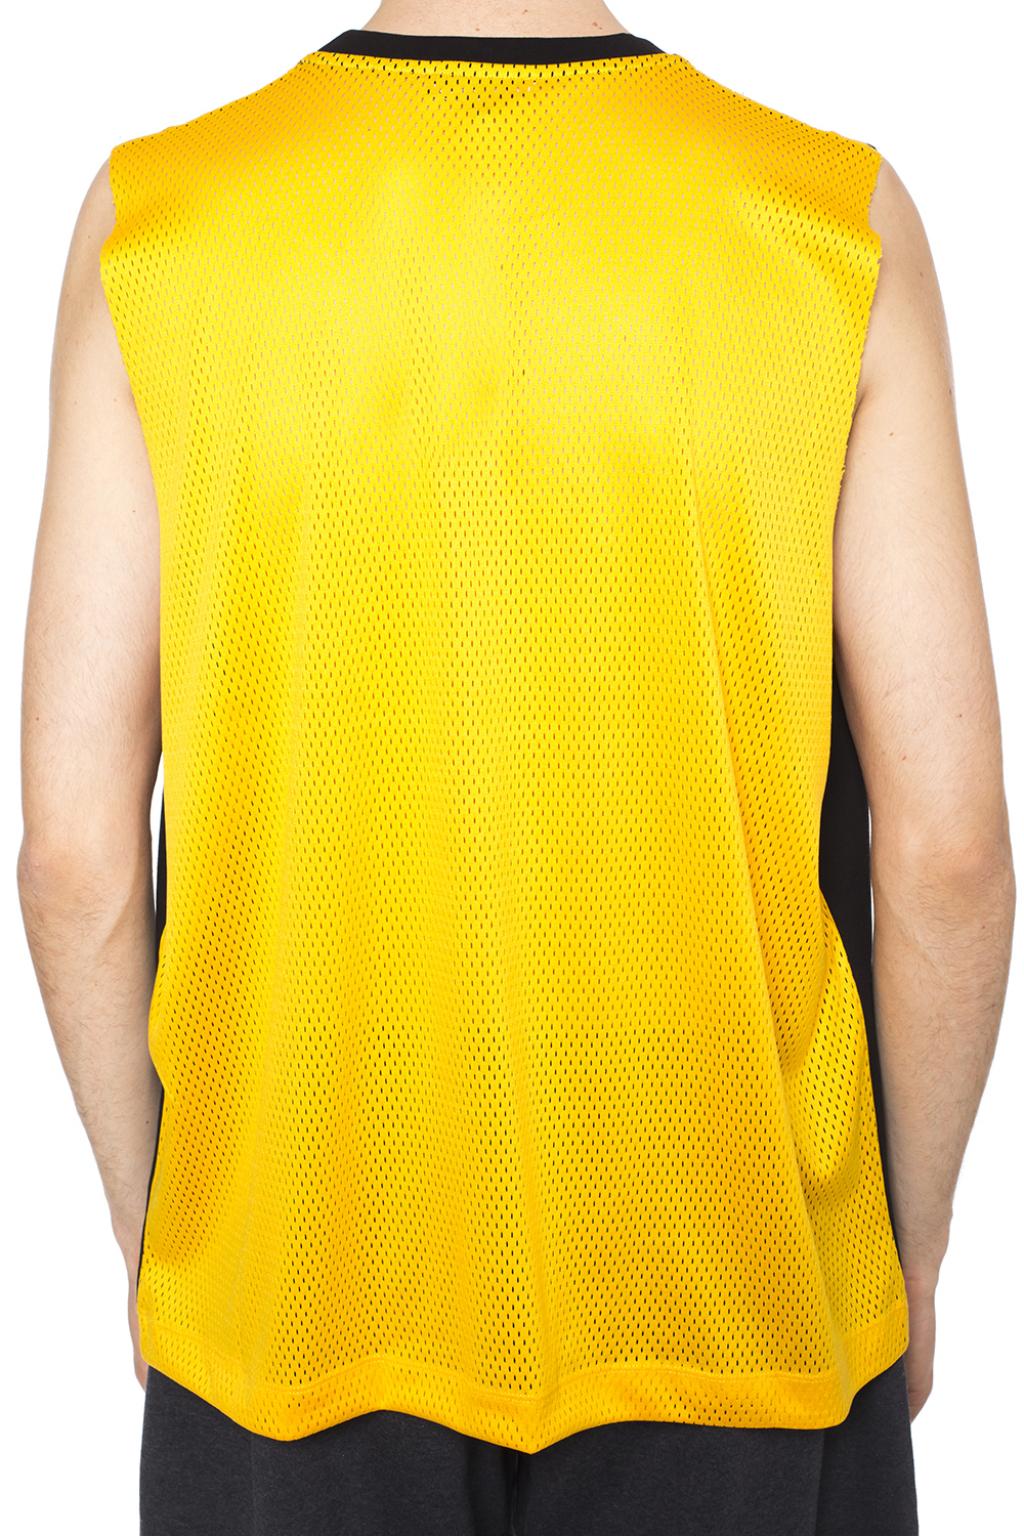 Gosha Rubchinskiy Sleeveless T-shirt | Men's Clothing | Vitkac